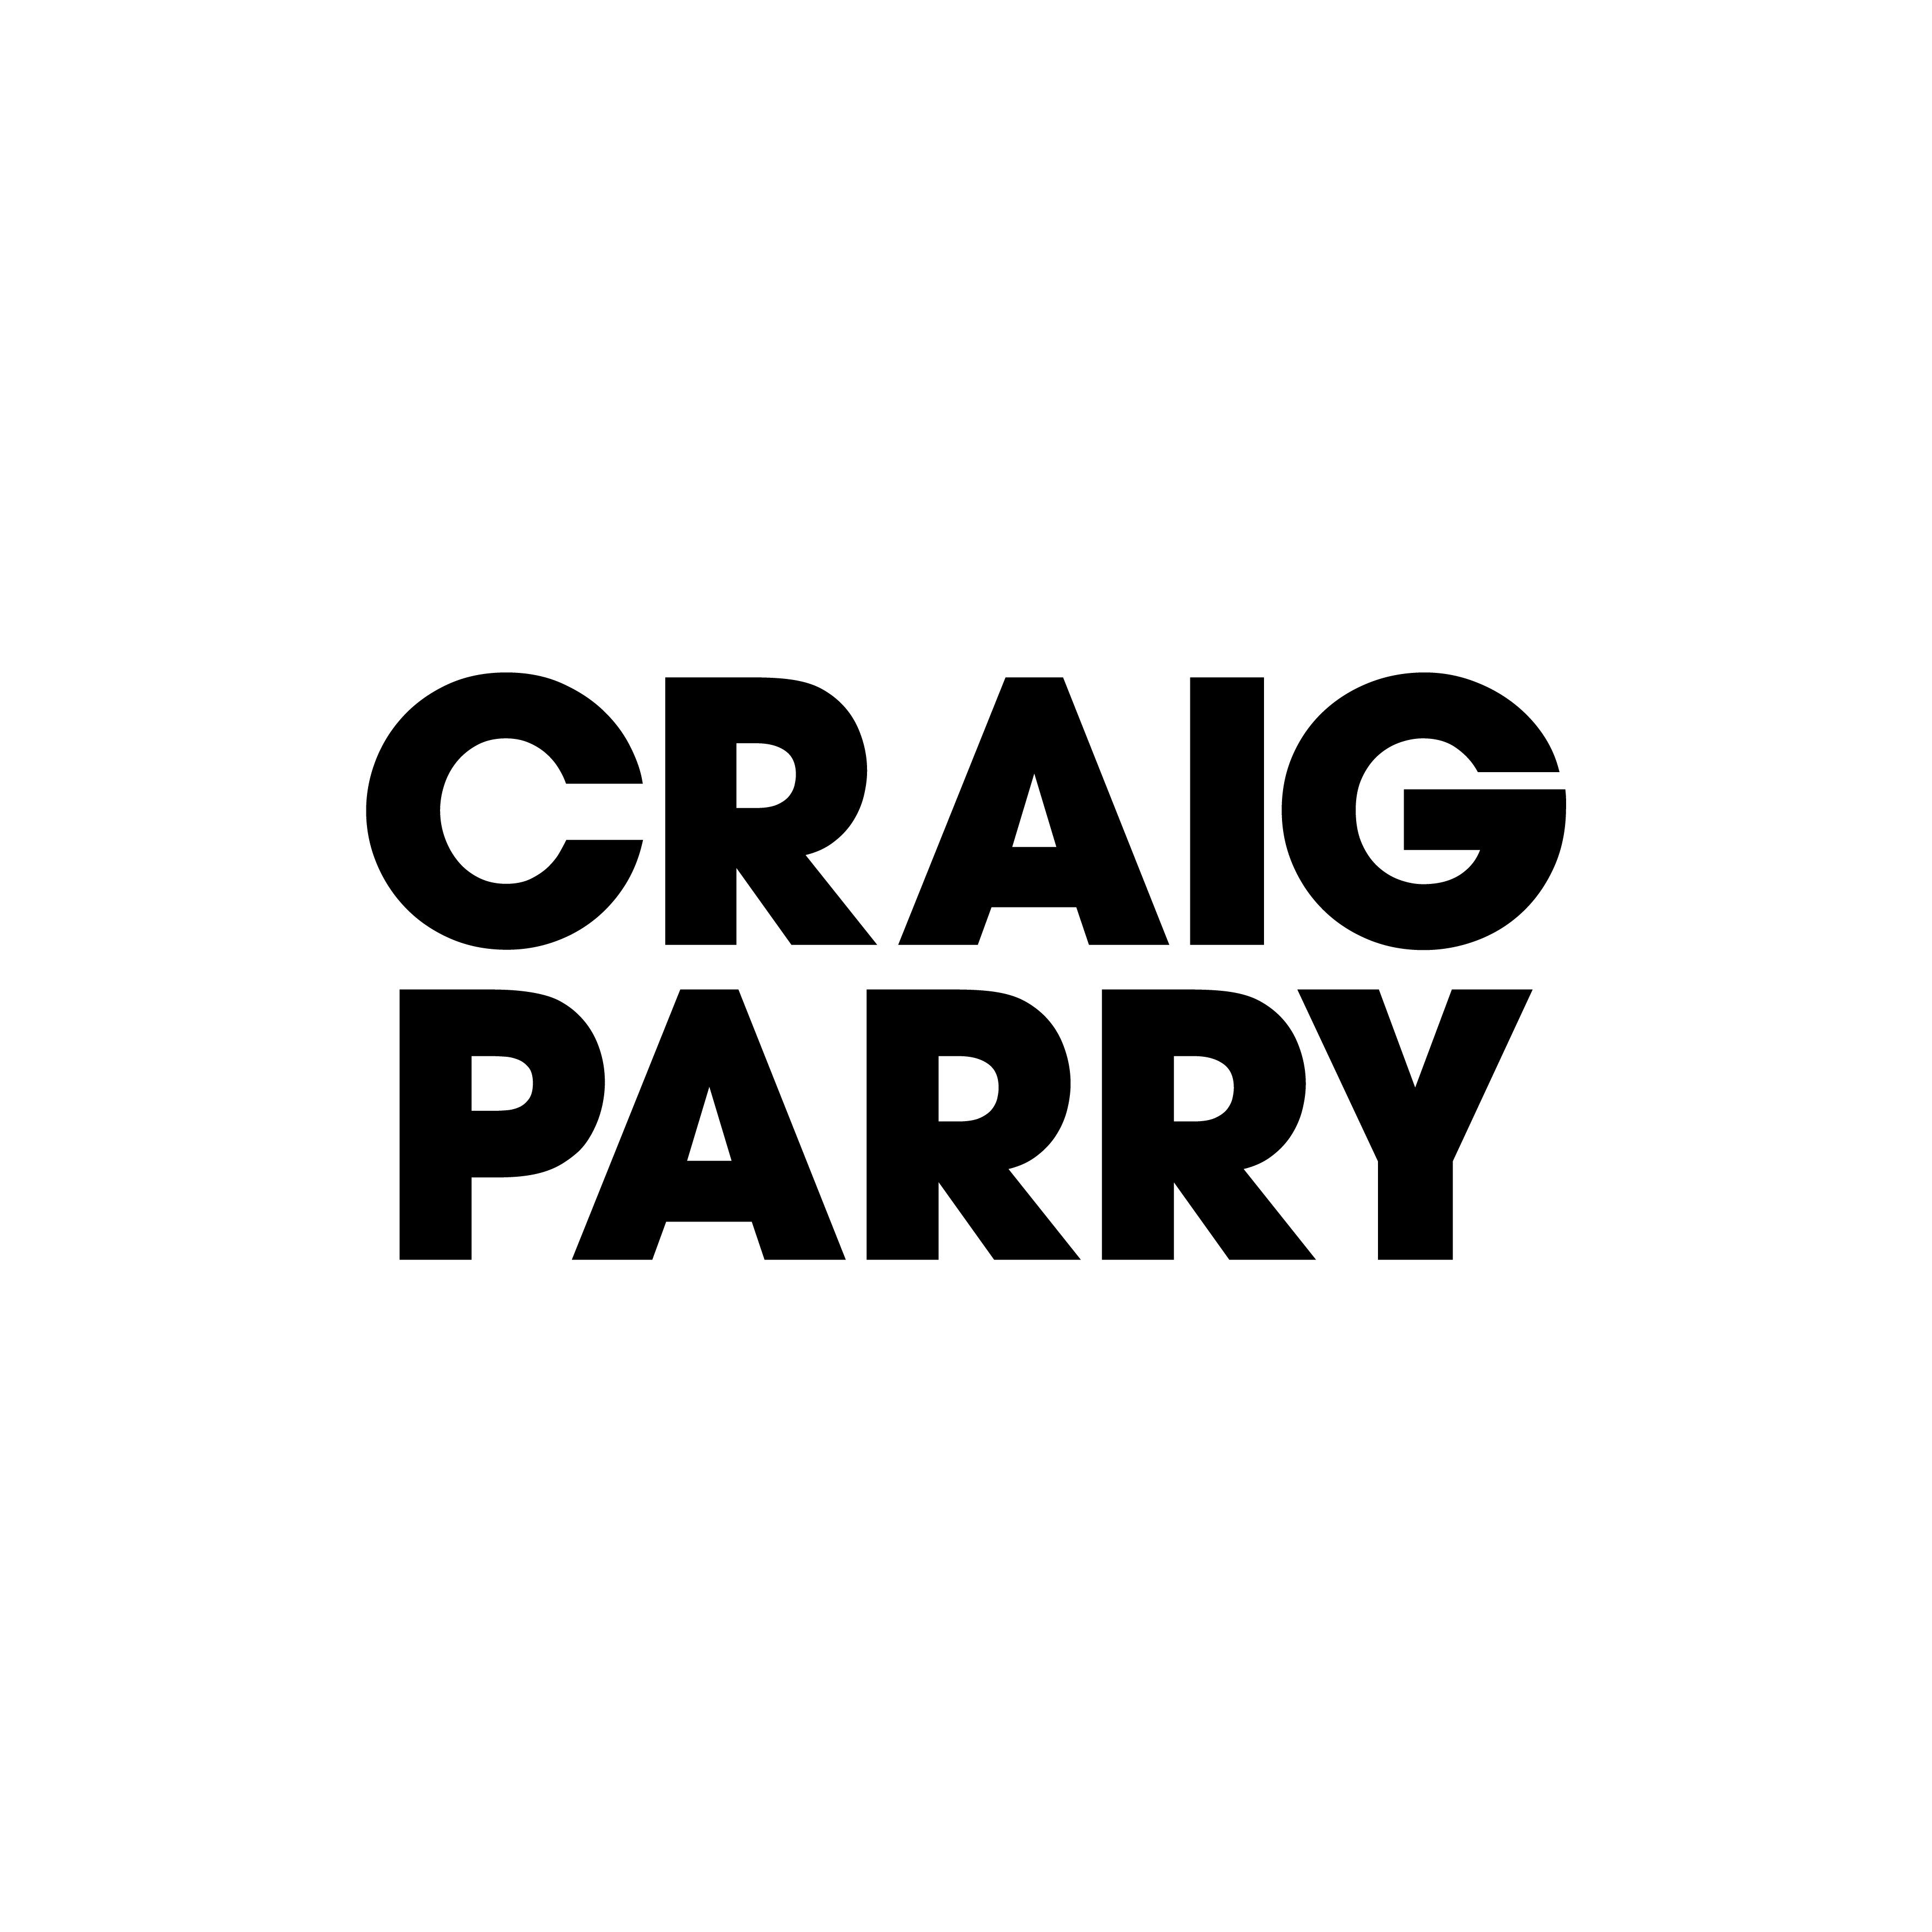 Craig Parry